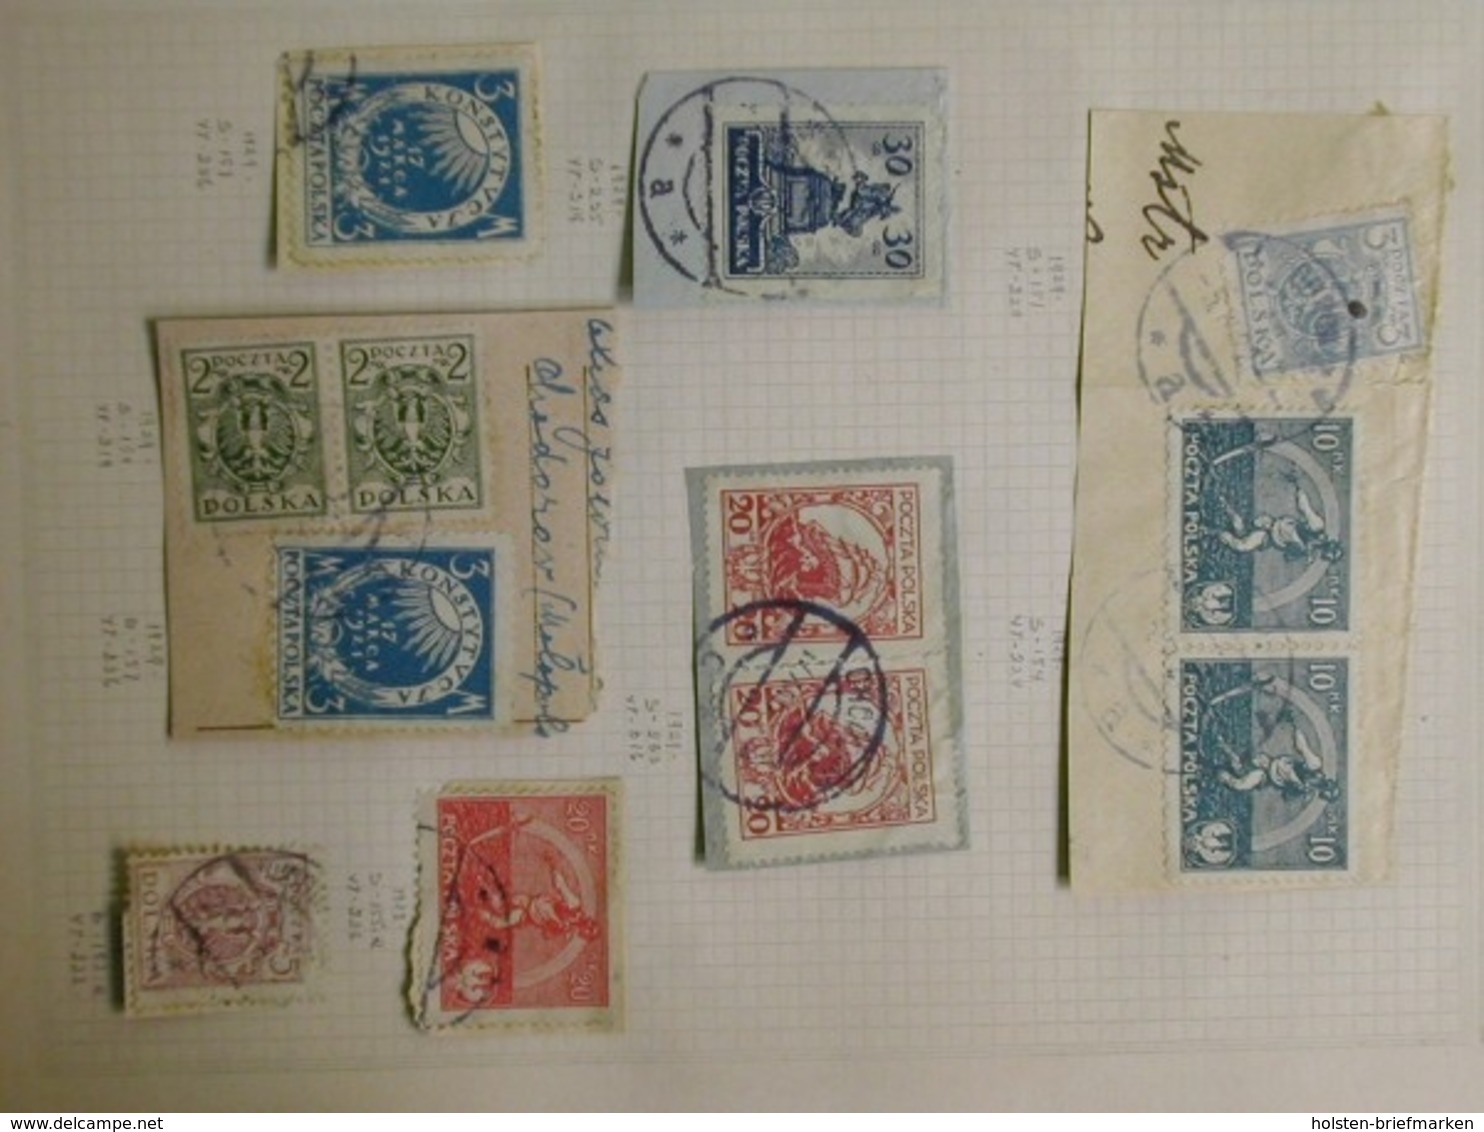 Polen, Partie aus den 1920er Jahren, meist Briefstücke